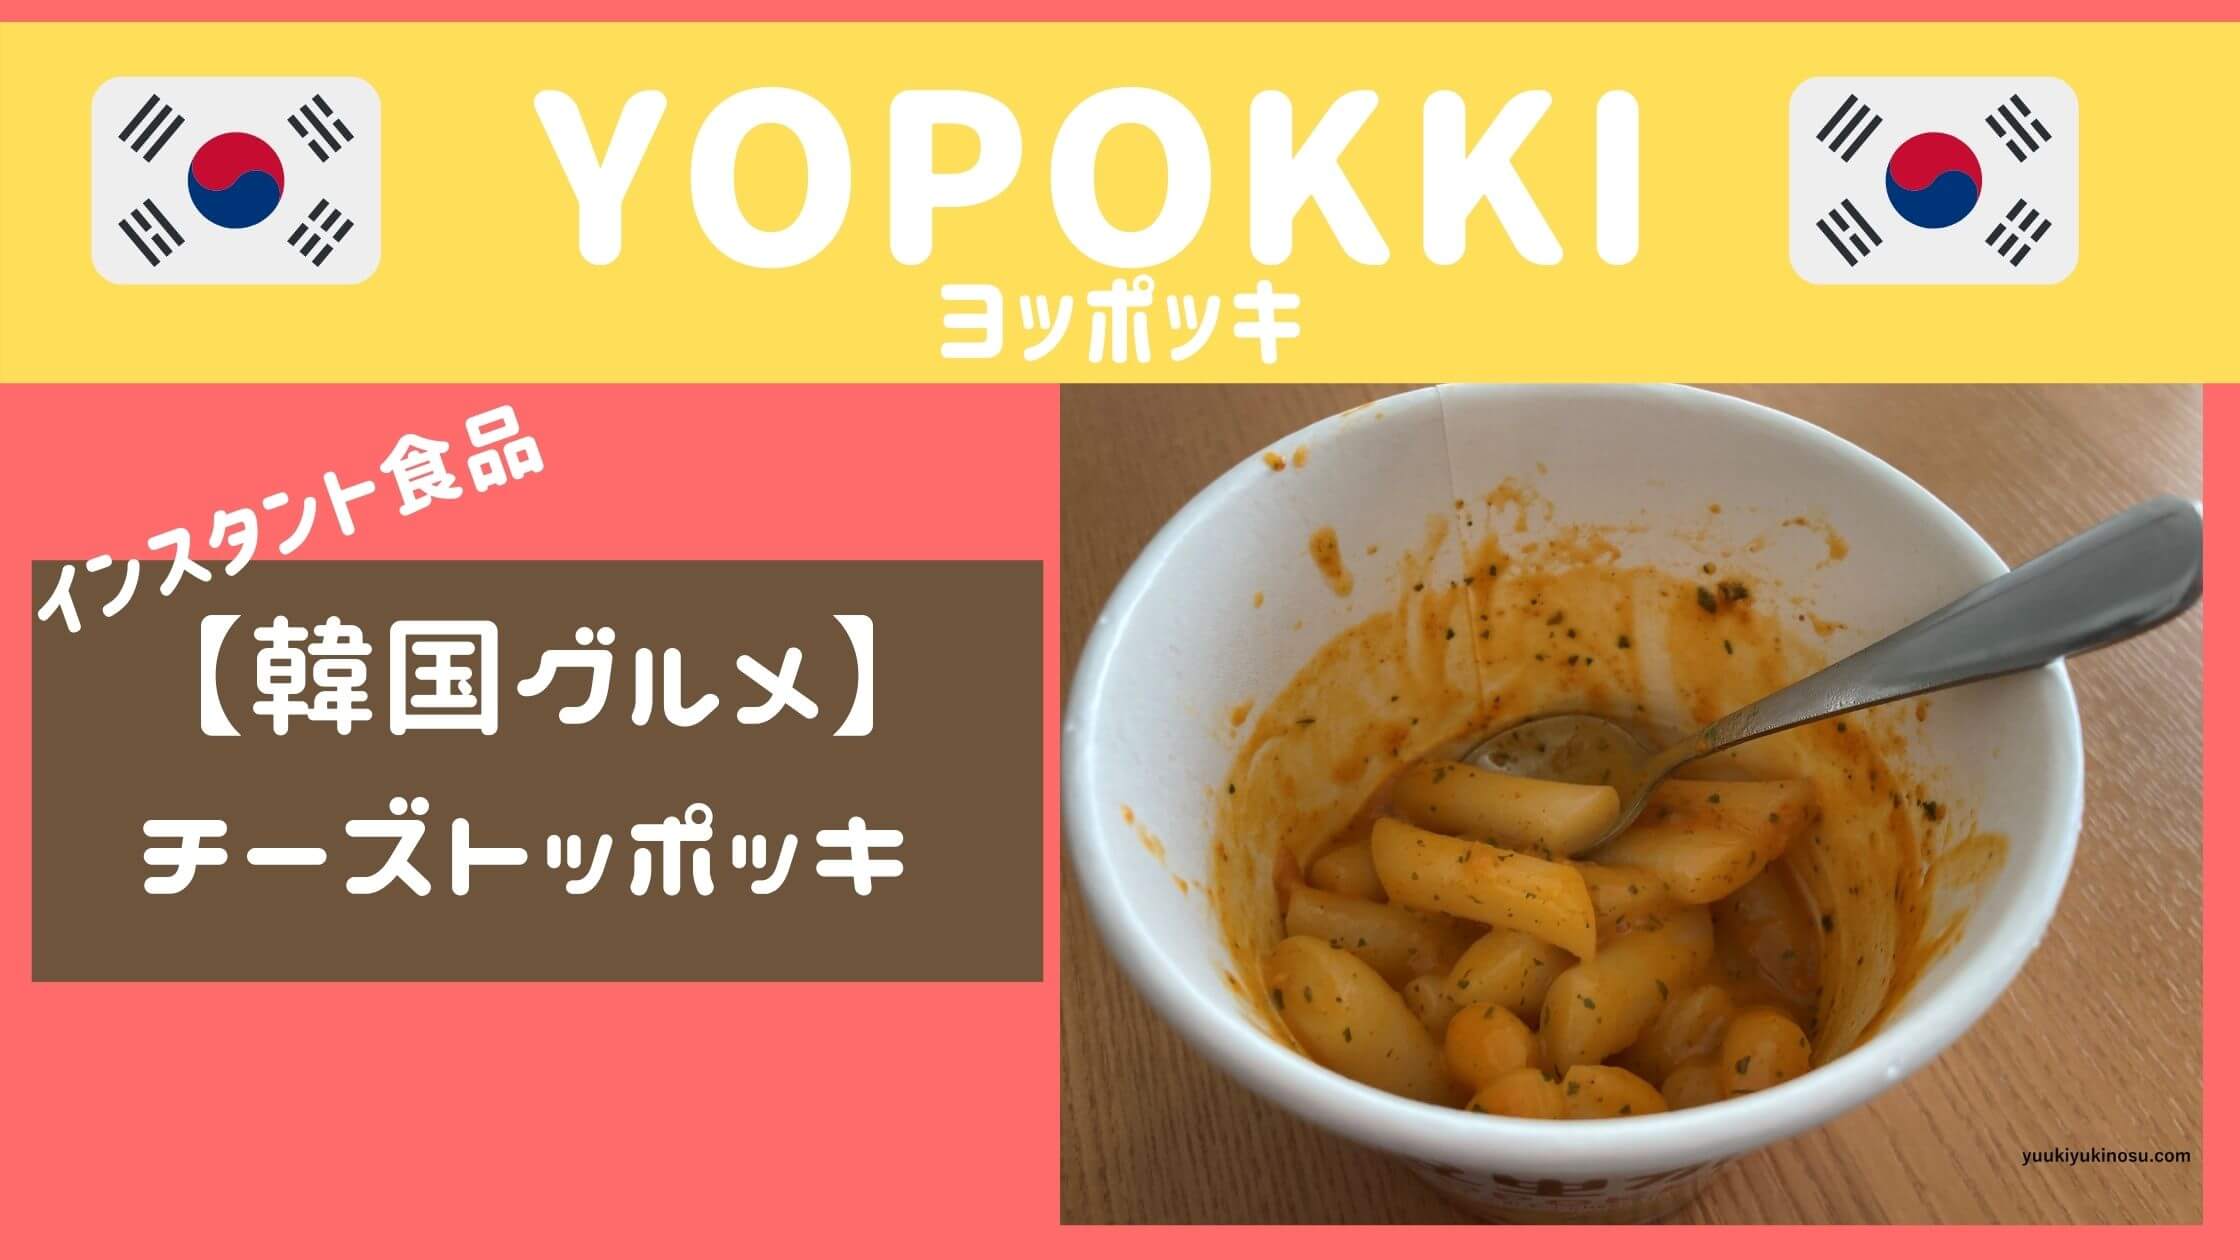 チーズトッポッキ 韓国インスタント食品のyopokkiが美味しい ゆうきyukiの巣